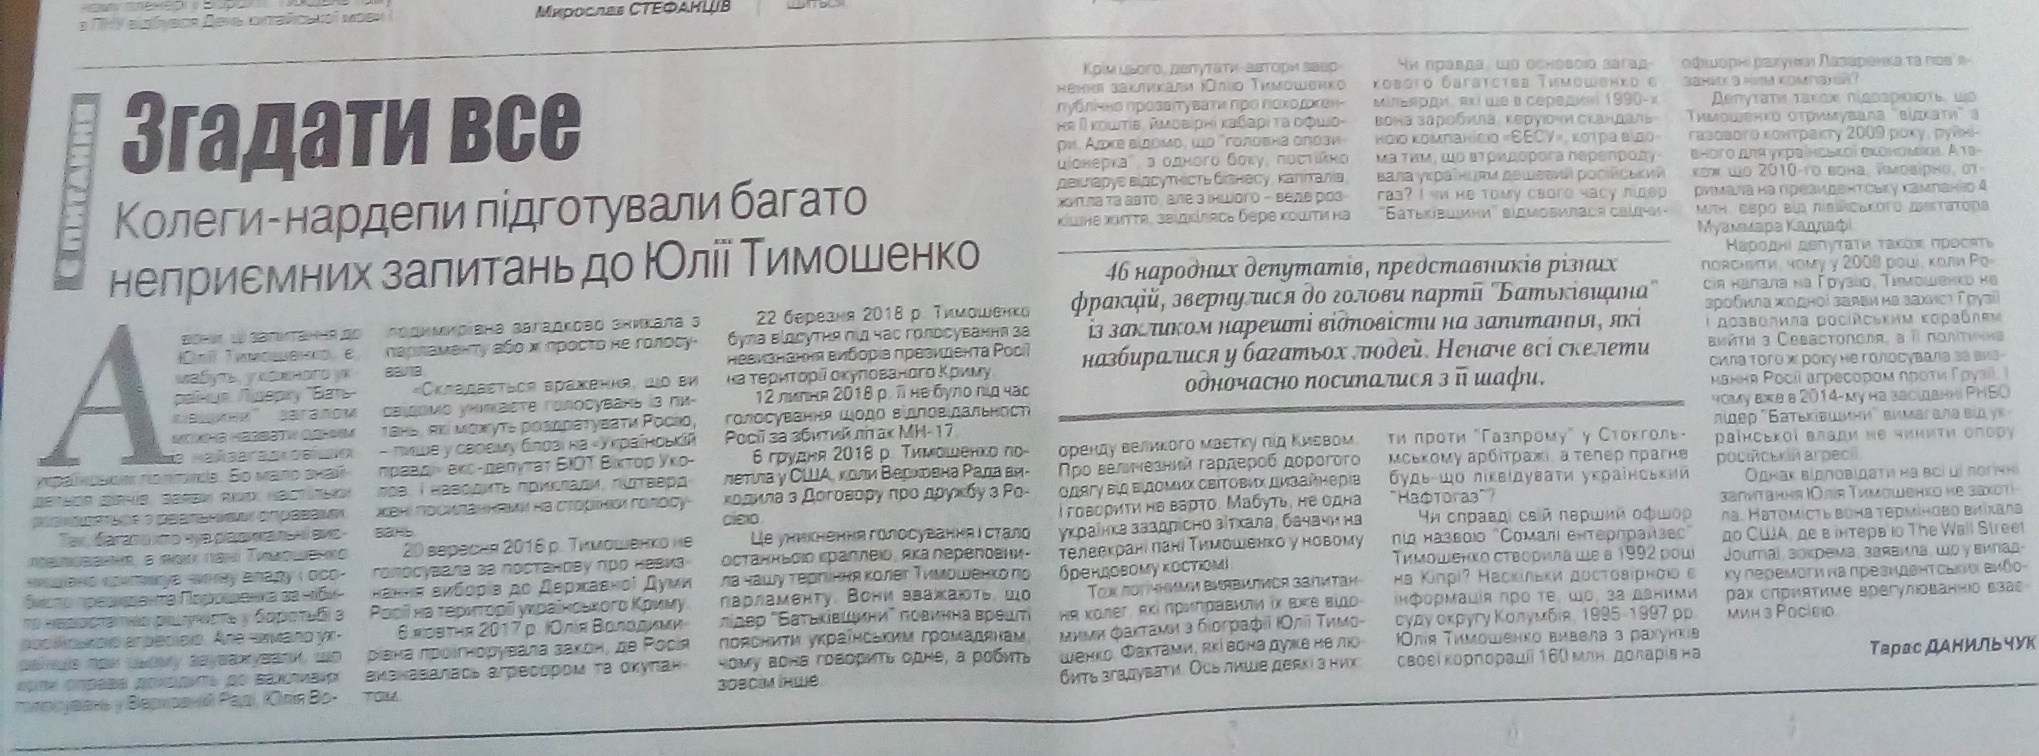 24.12.18. Tymoshenko black piar gazety 1